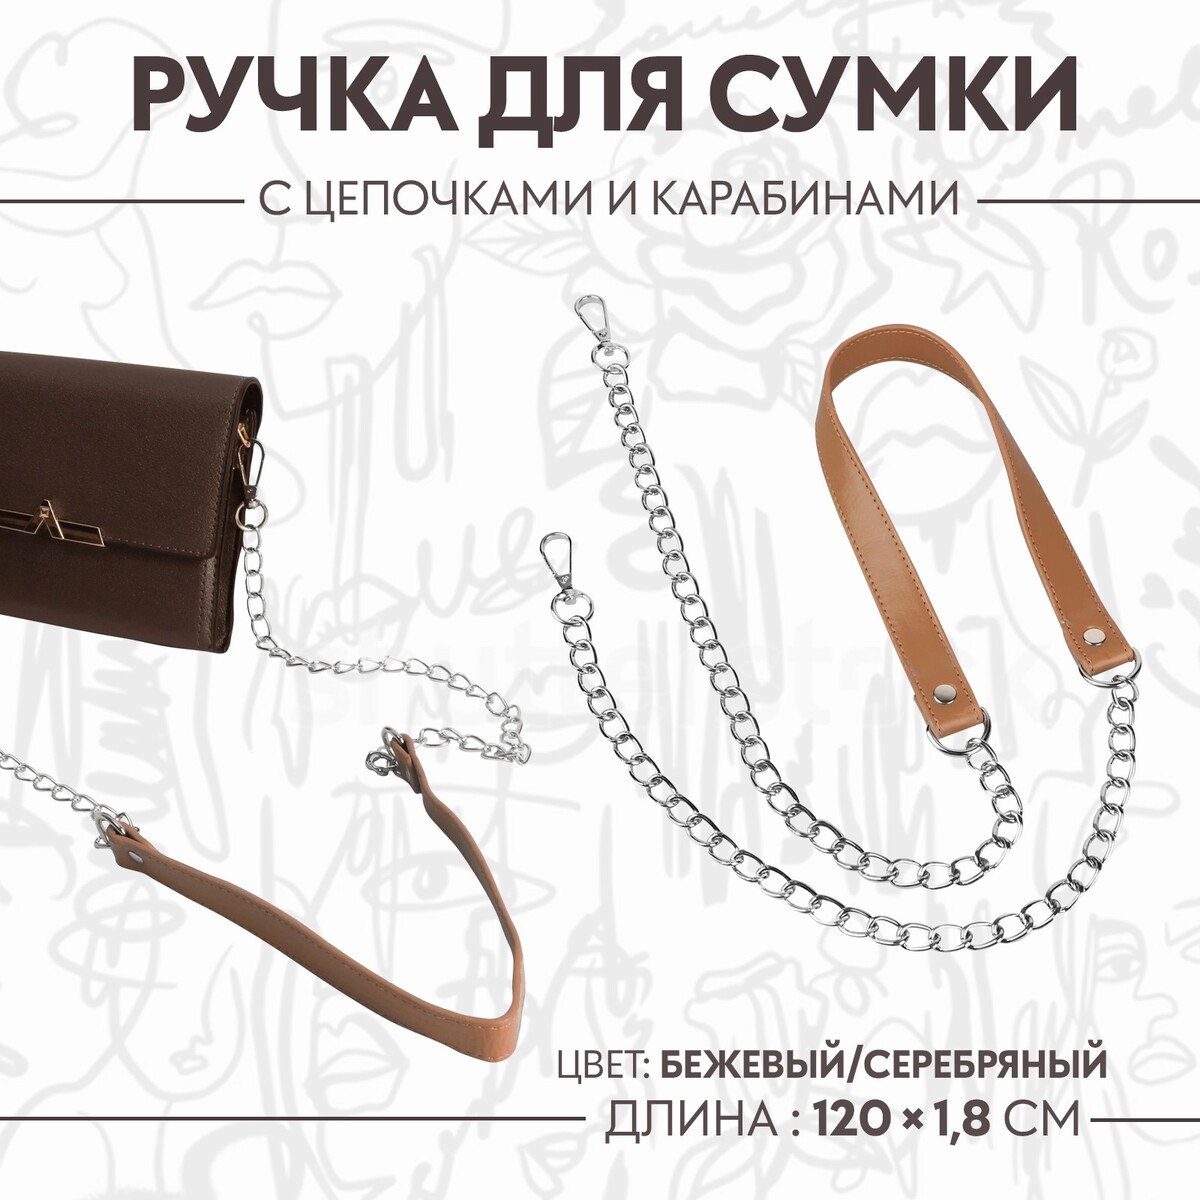 Ручка для сумки, с цепочками и карабинами, 120 × 1,8 см, цвет бежевый ручка для сумки бамбук с цепочками и карабинами 60 см золотой